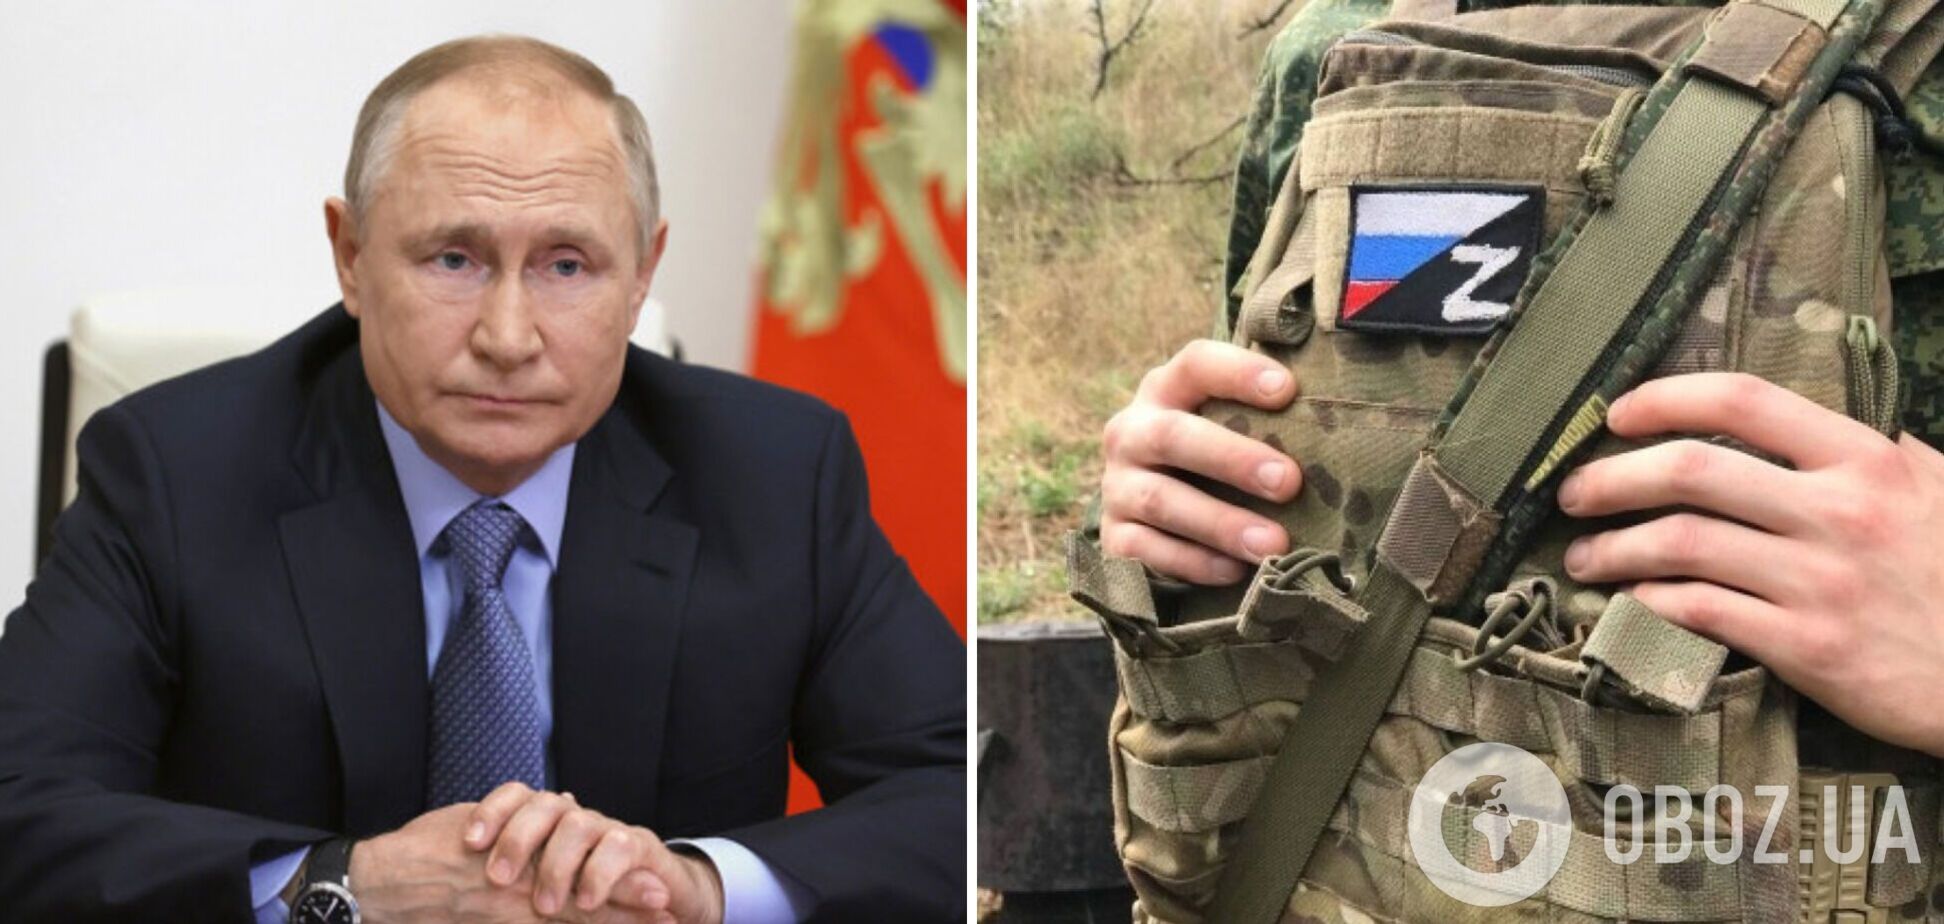 Солдат расстреливают за дезертирство, но есть нюанс: Путин выдал новое заявление, его сразу же опозорили российские пропагандисты. Видео